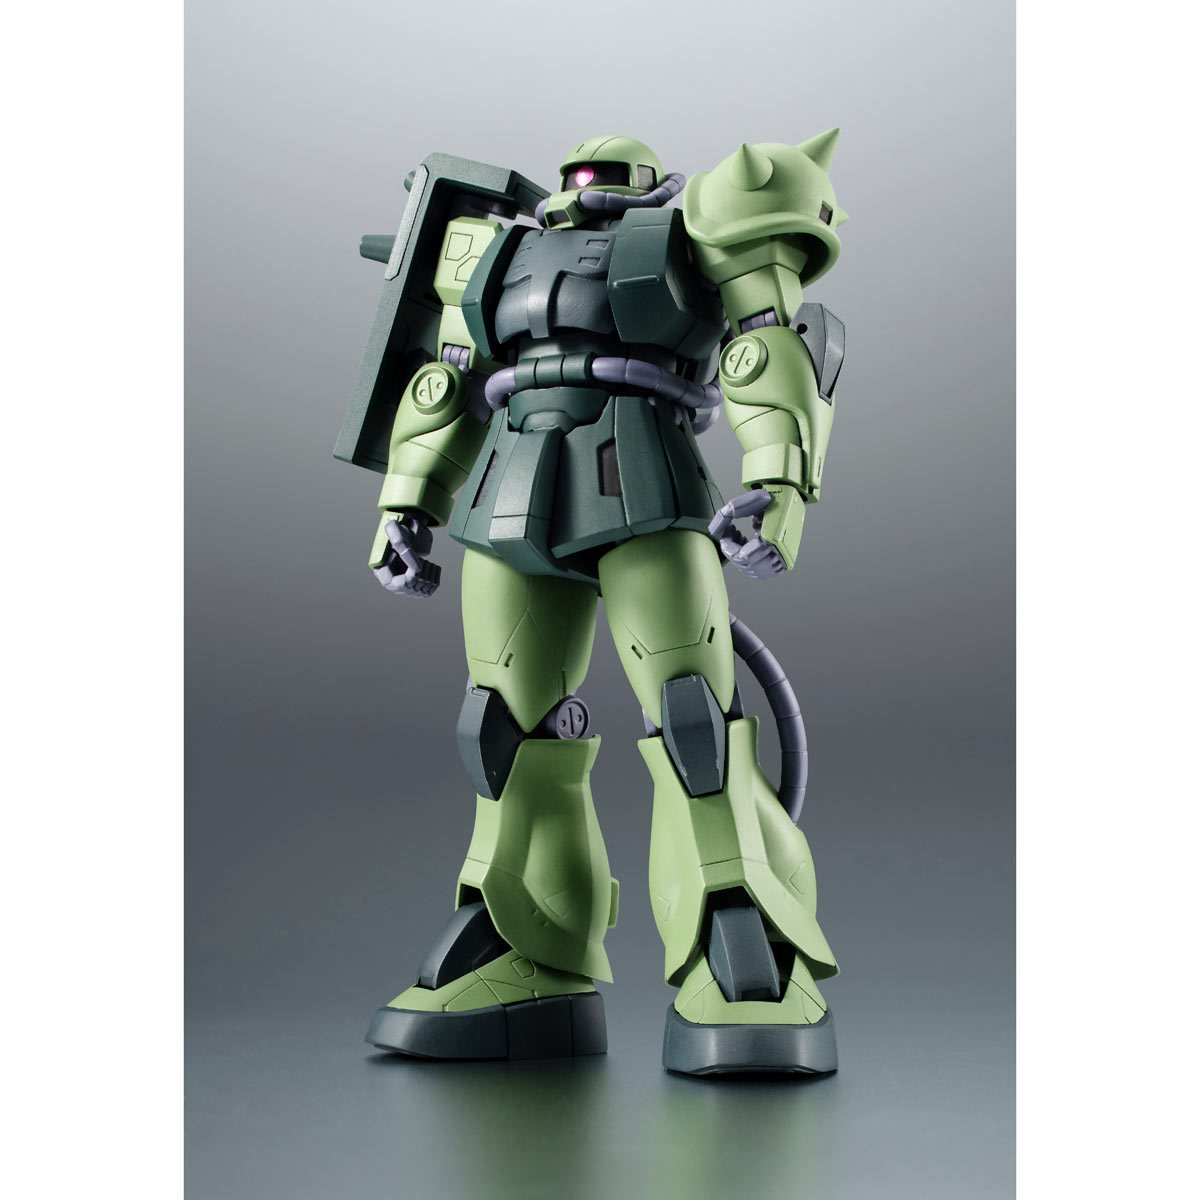 Bandai Tamashii Nations The Robot Spirits: Mobile Suit Gundam - MS06JC ZAKU II Figura de Accion